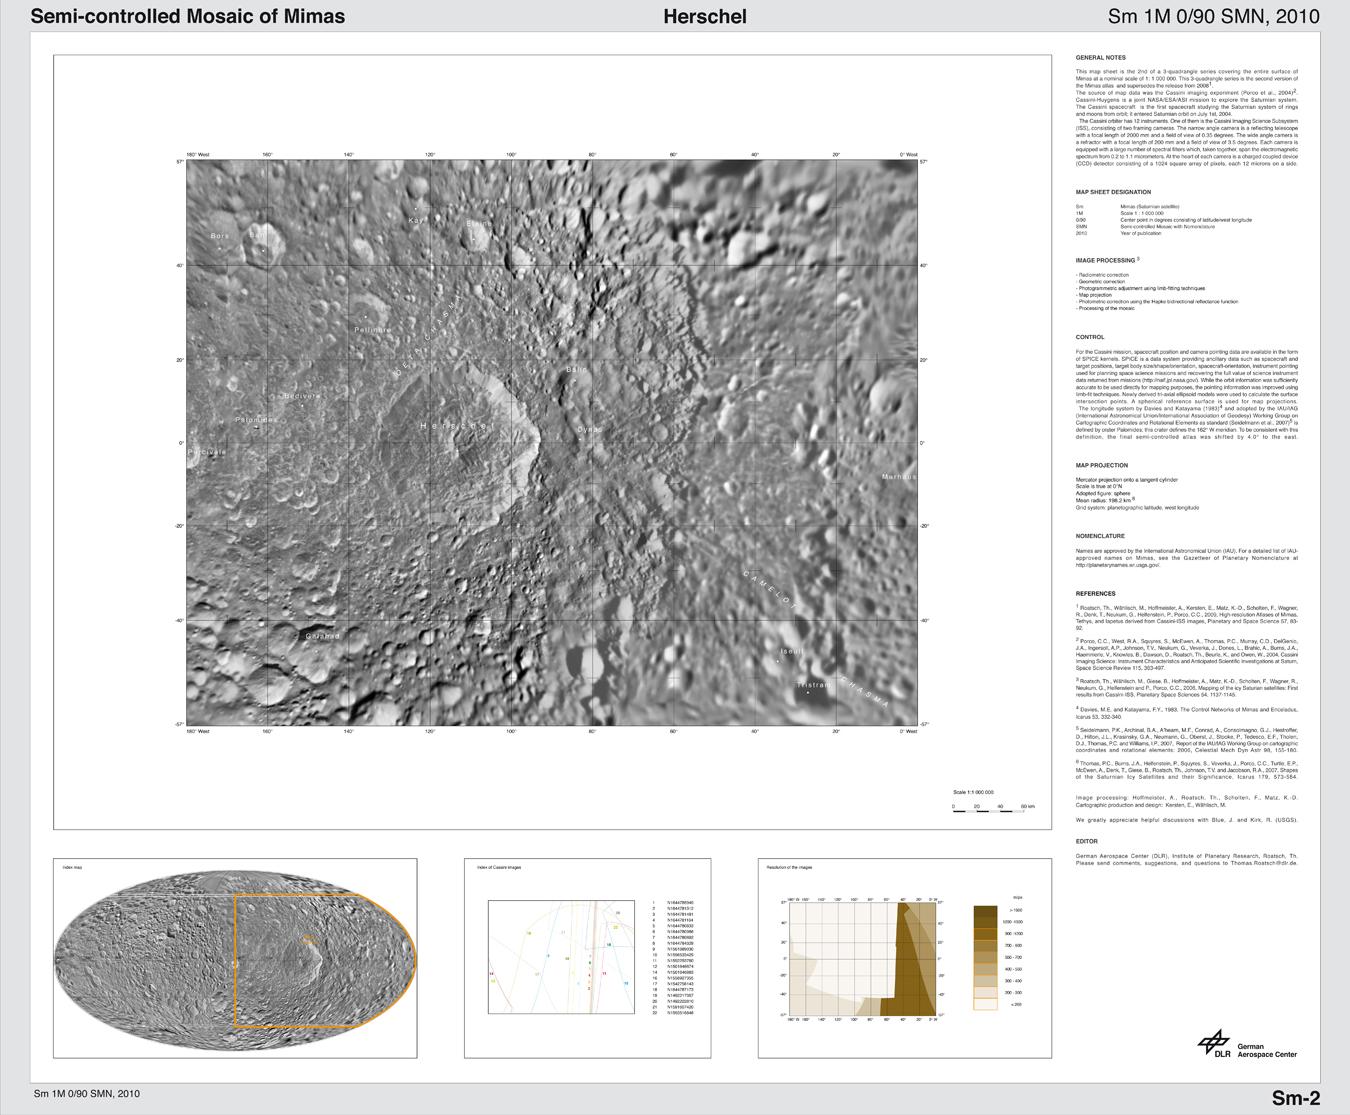 The Mimas Atlas -- Herschel